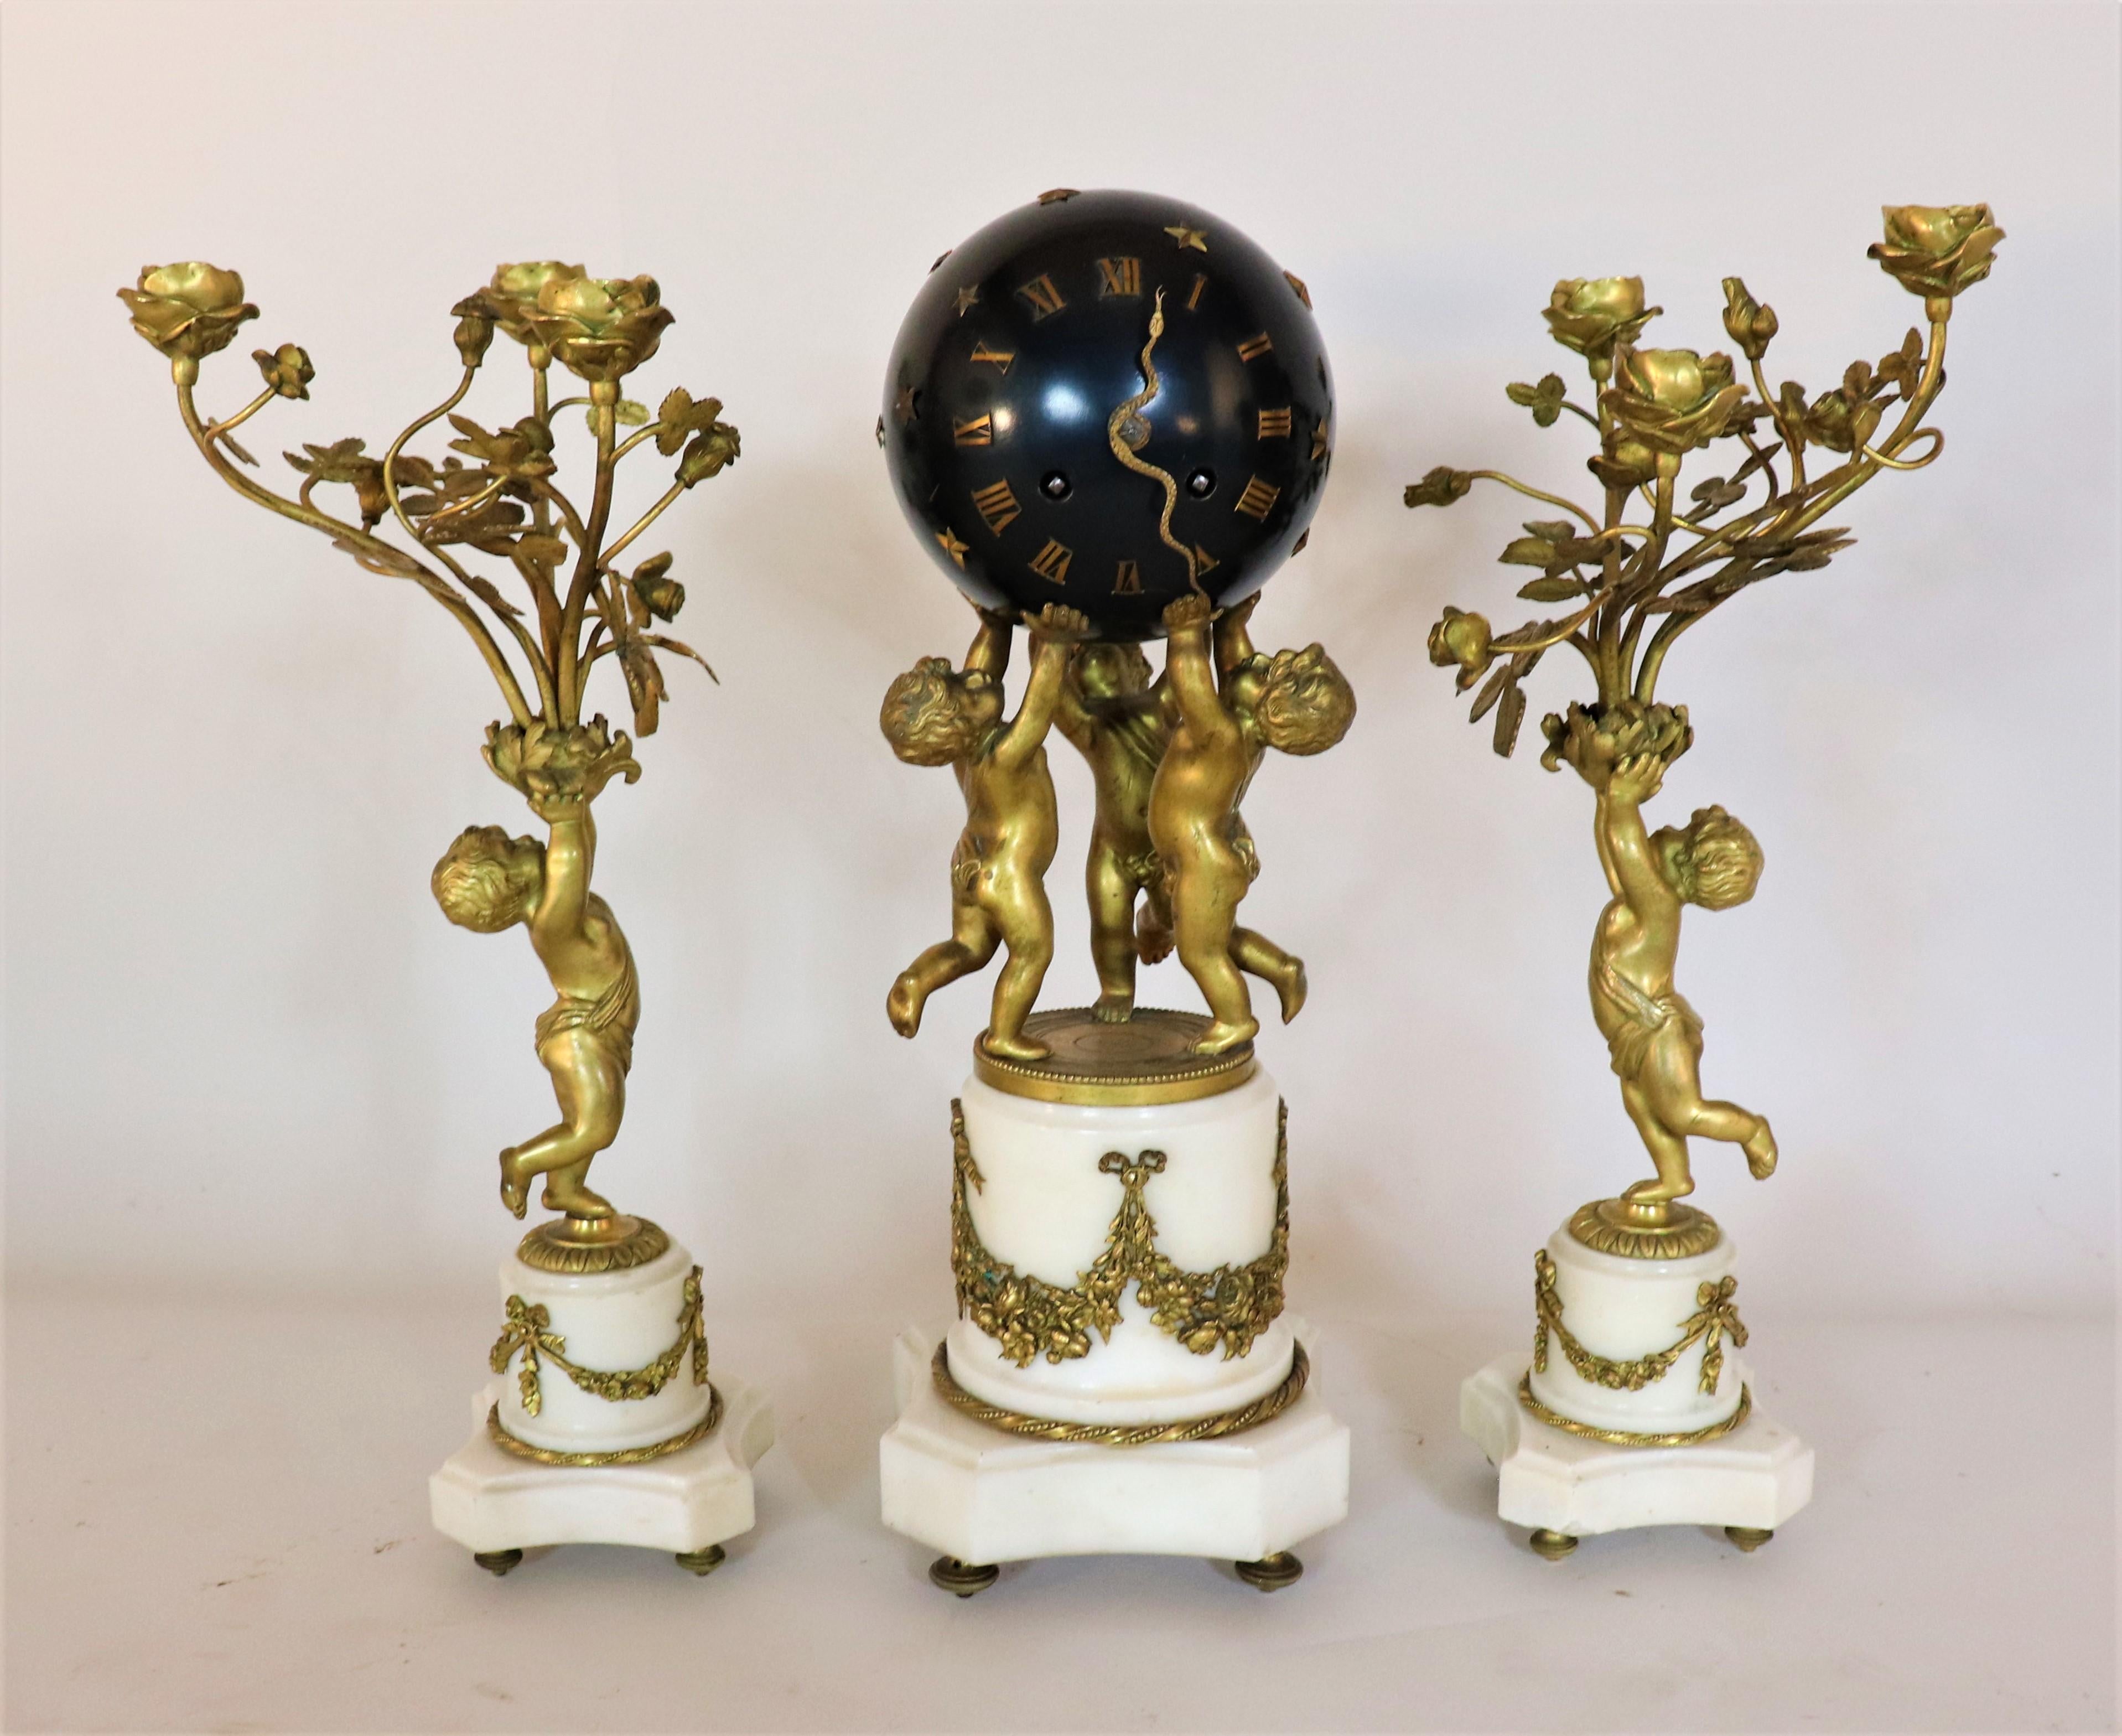 Circa 1890 French Jewel Escape Movement Bronze and Marble Three Piece Clock and Candle Garniture. L'horloge de ce set est composée de trois putti en bronze qui soutiennent une horloge sphérique noire à chiffres romains. C'est ce qu'on appelle une